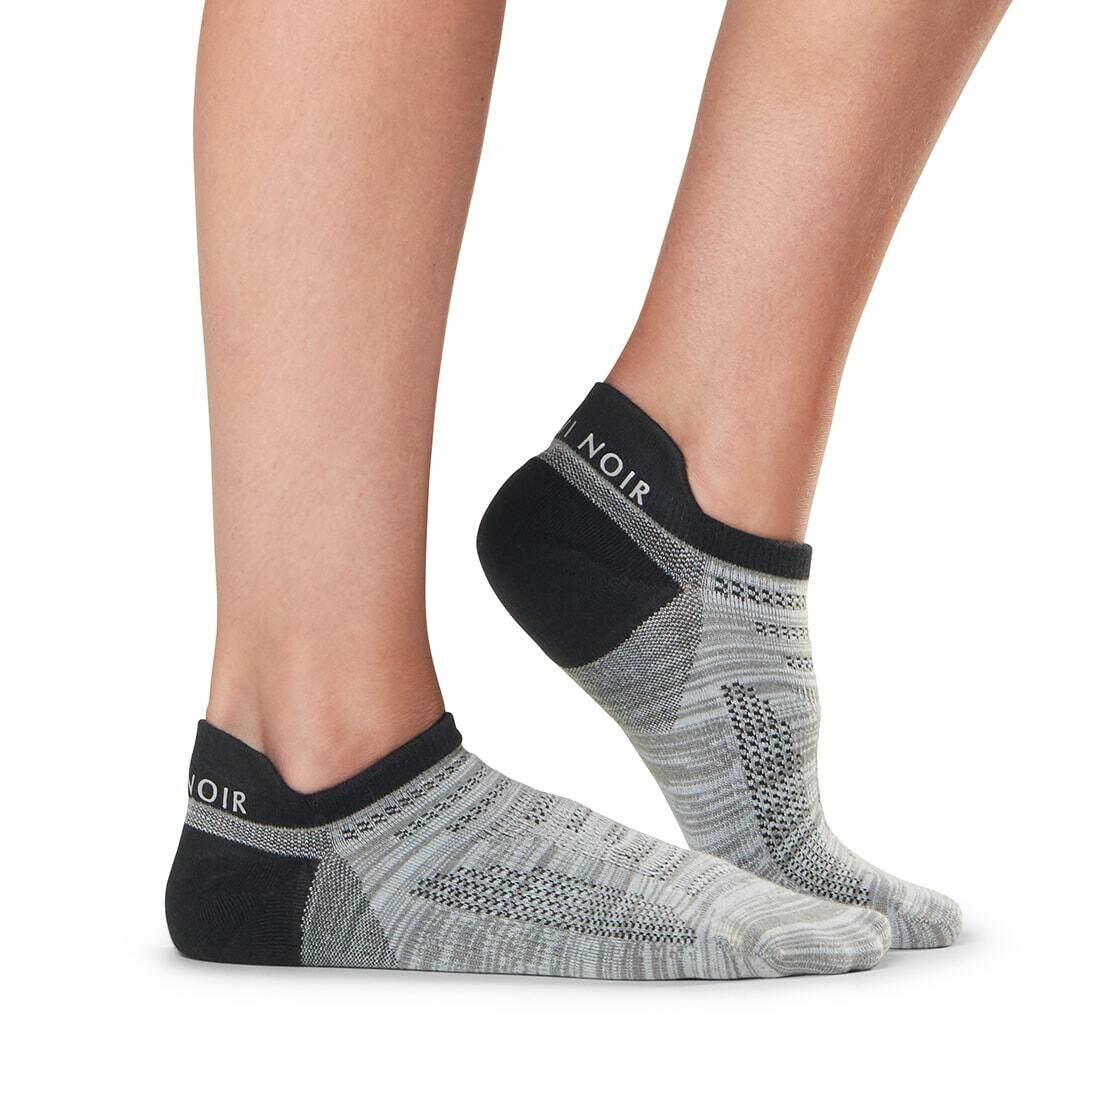 FITNESS-MAD Womens/Ladies Parker Sports Socks (Grey/Black)